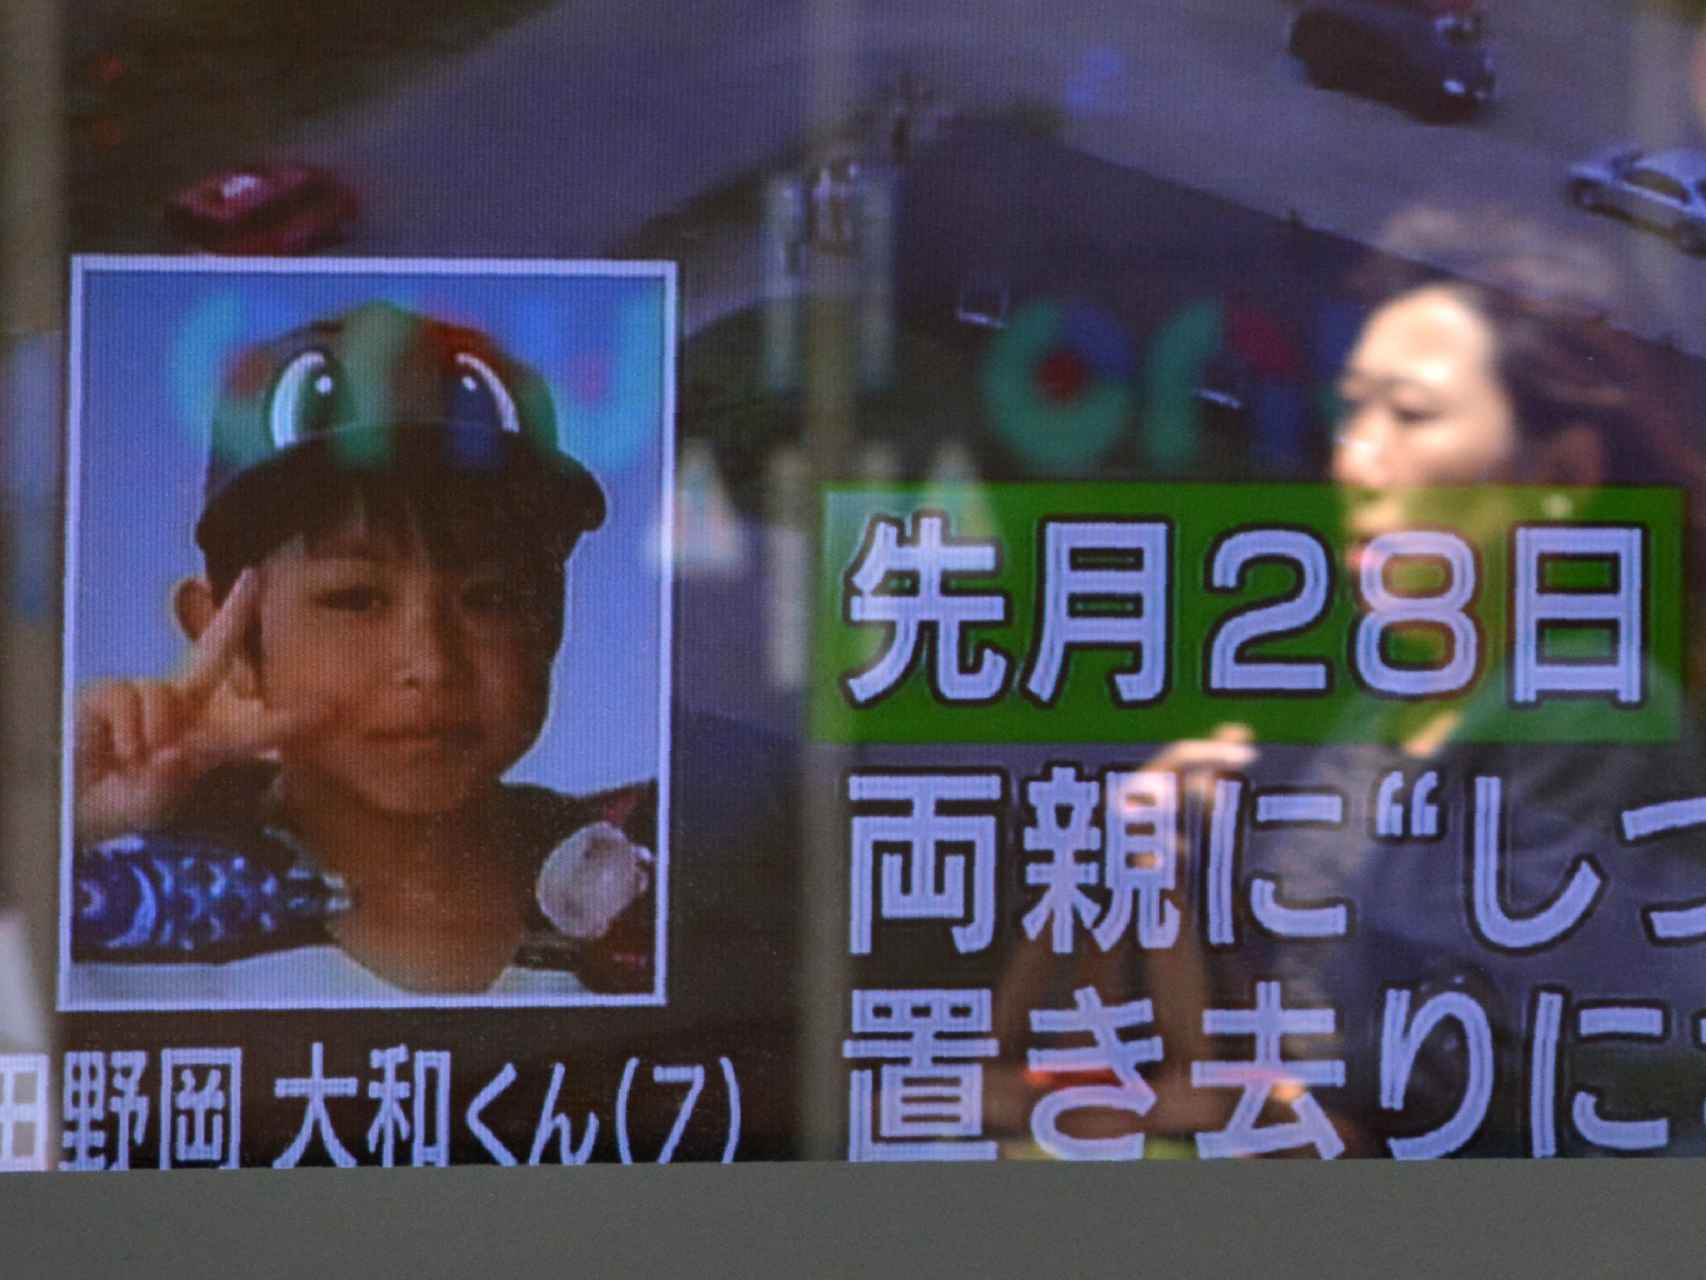 Yamato se alegró de ver a sus padres 6 días después de dejarle solo junto a la carretera.